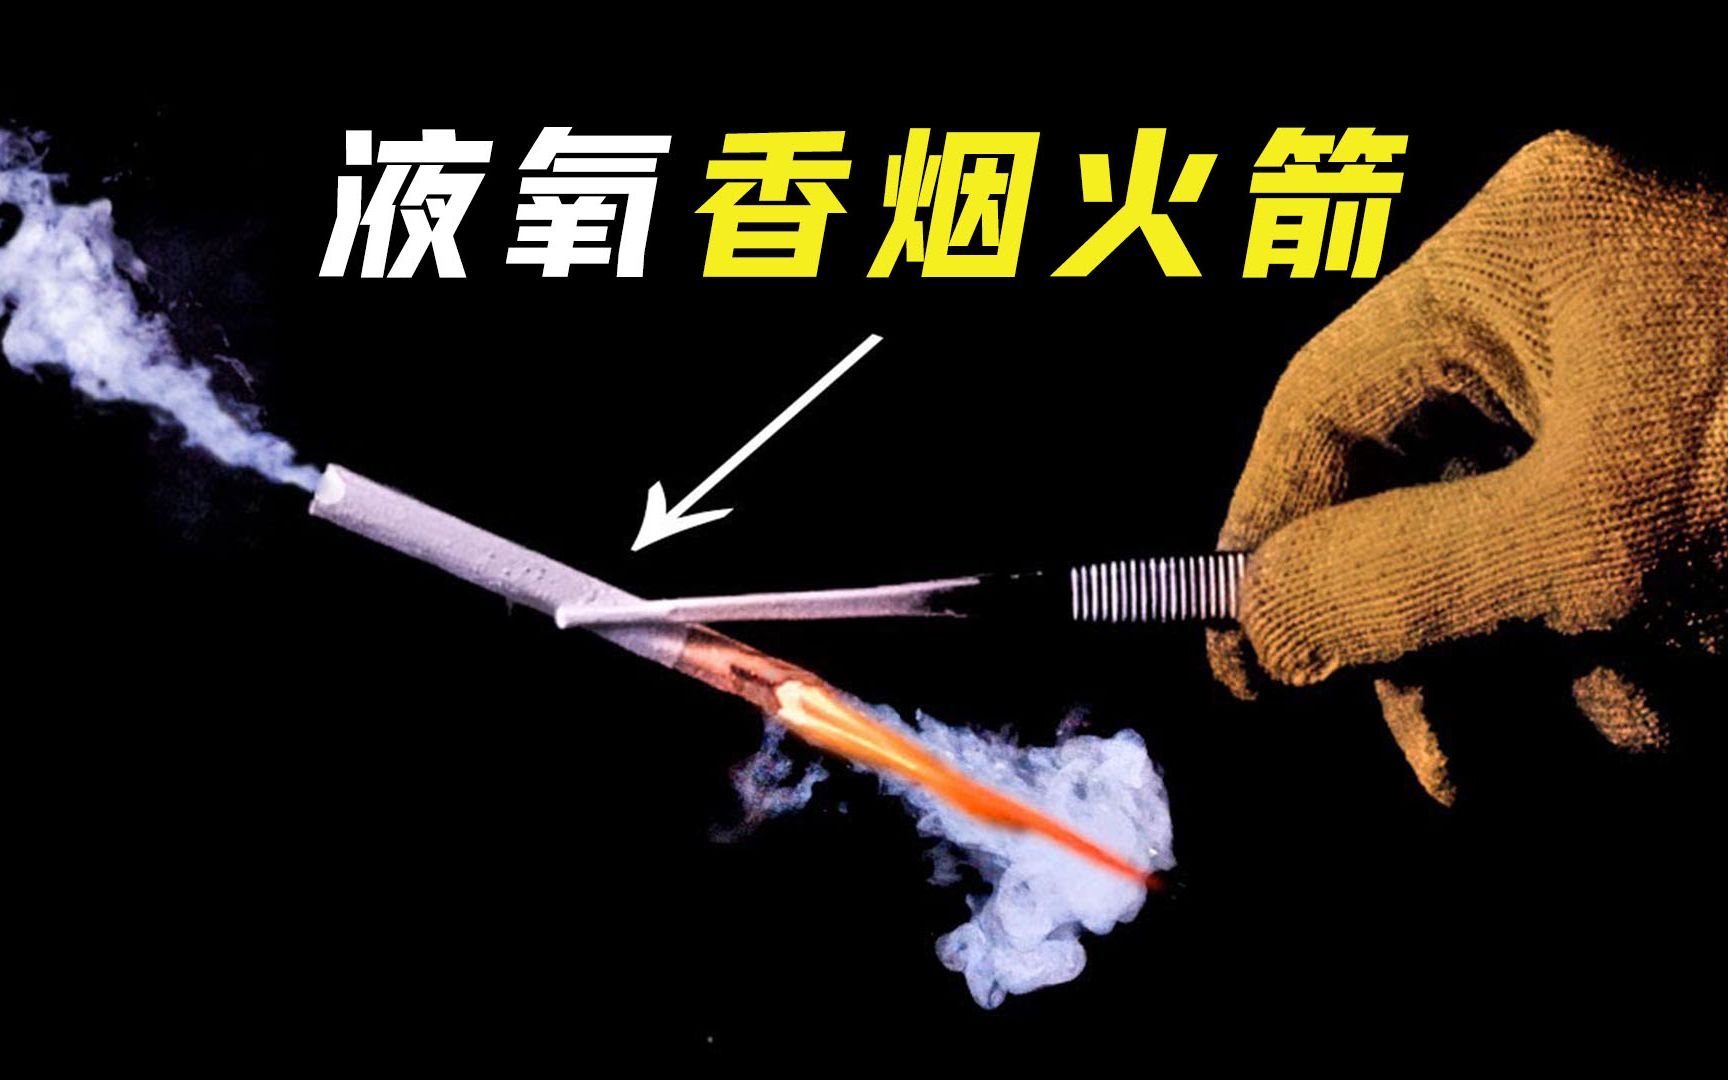 液氧+香烟=火箭？浸泡液氧的香烟，为何能像火箭一样一飞冲天？